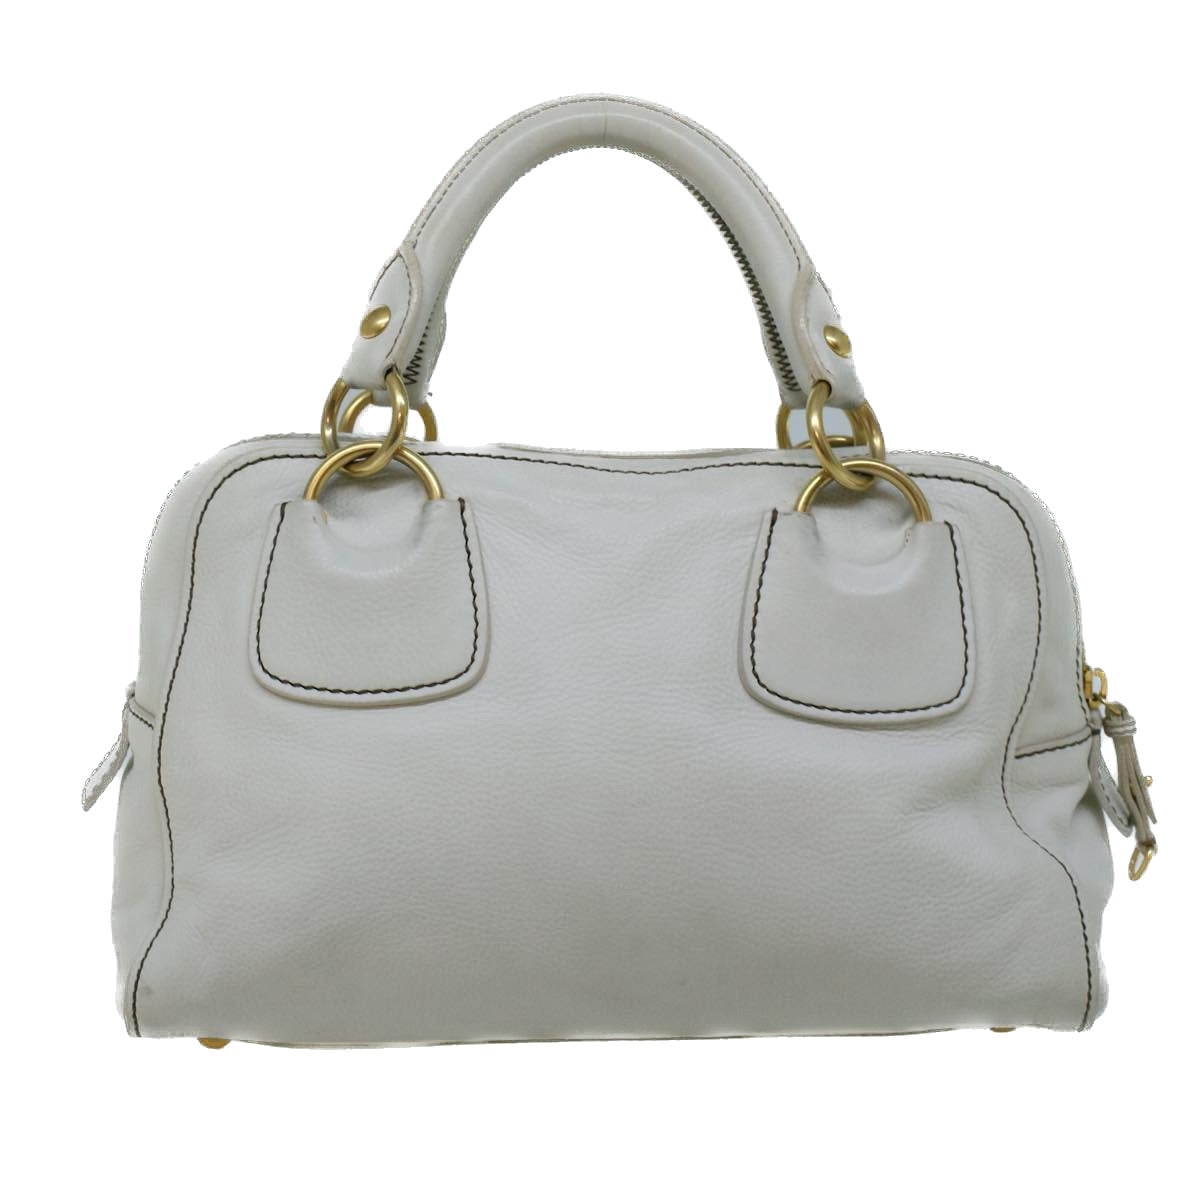 Miu Miu Hand Bag Leather White Auth bs9198 - 0